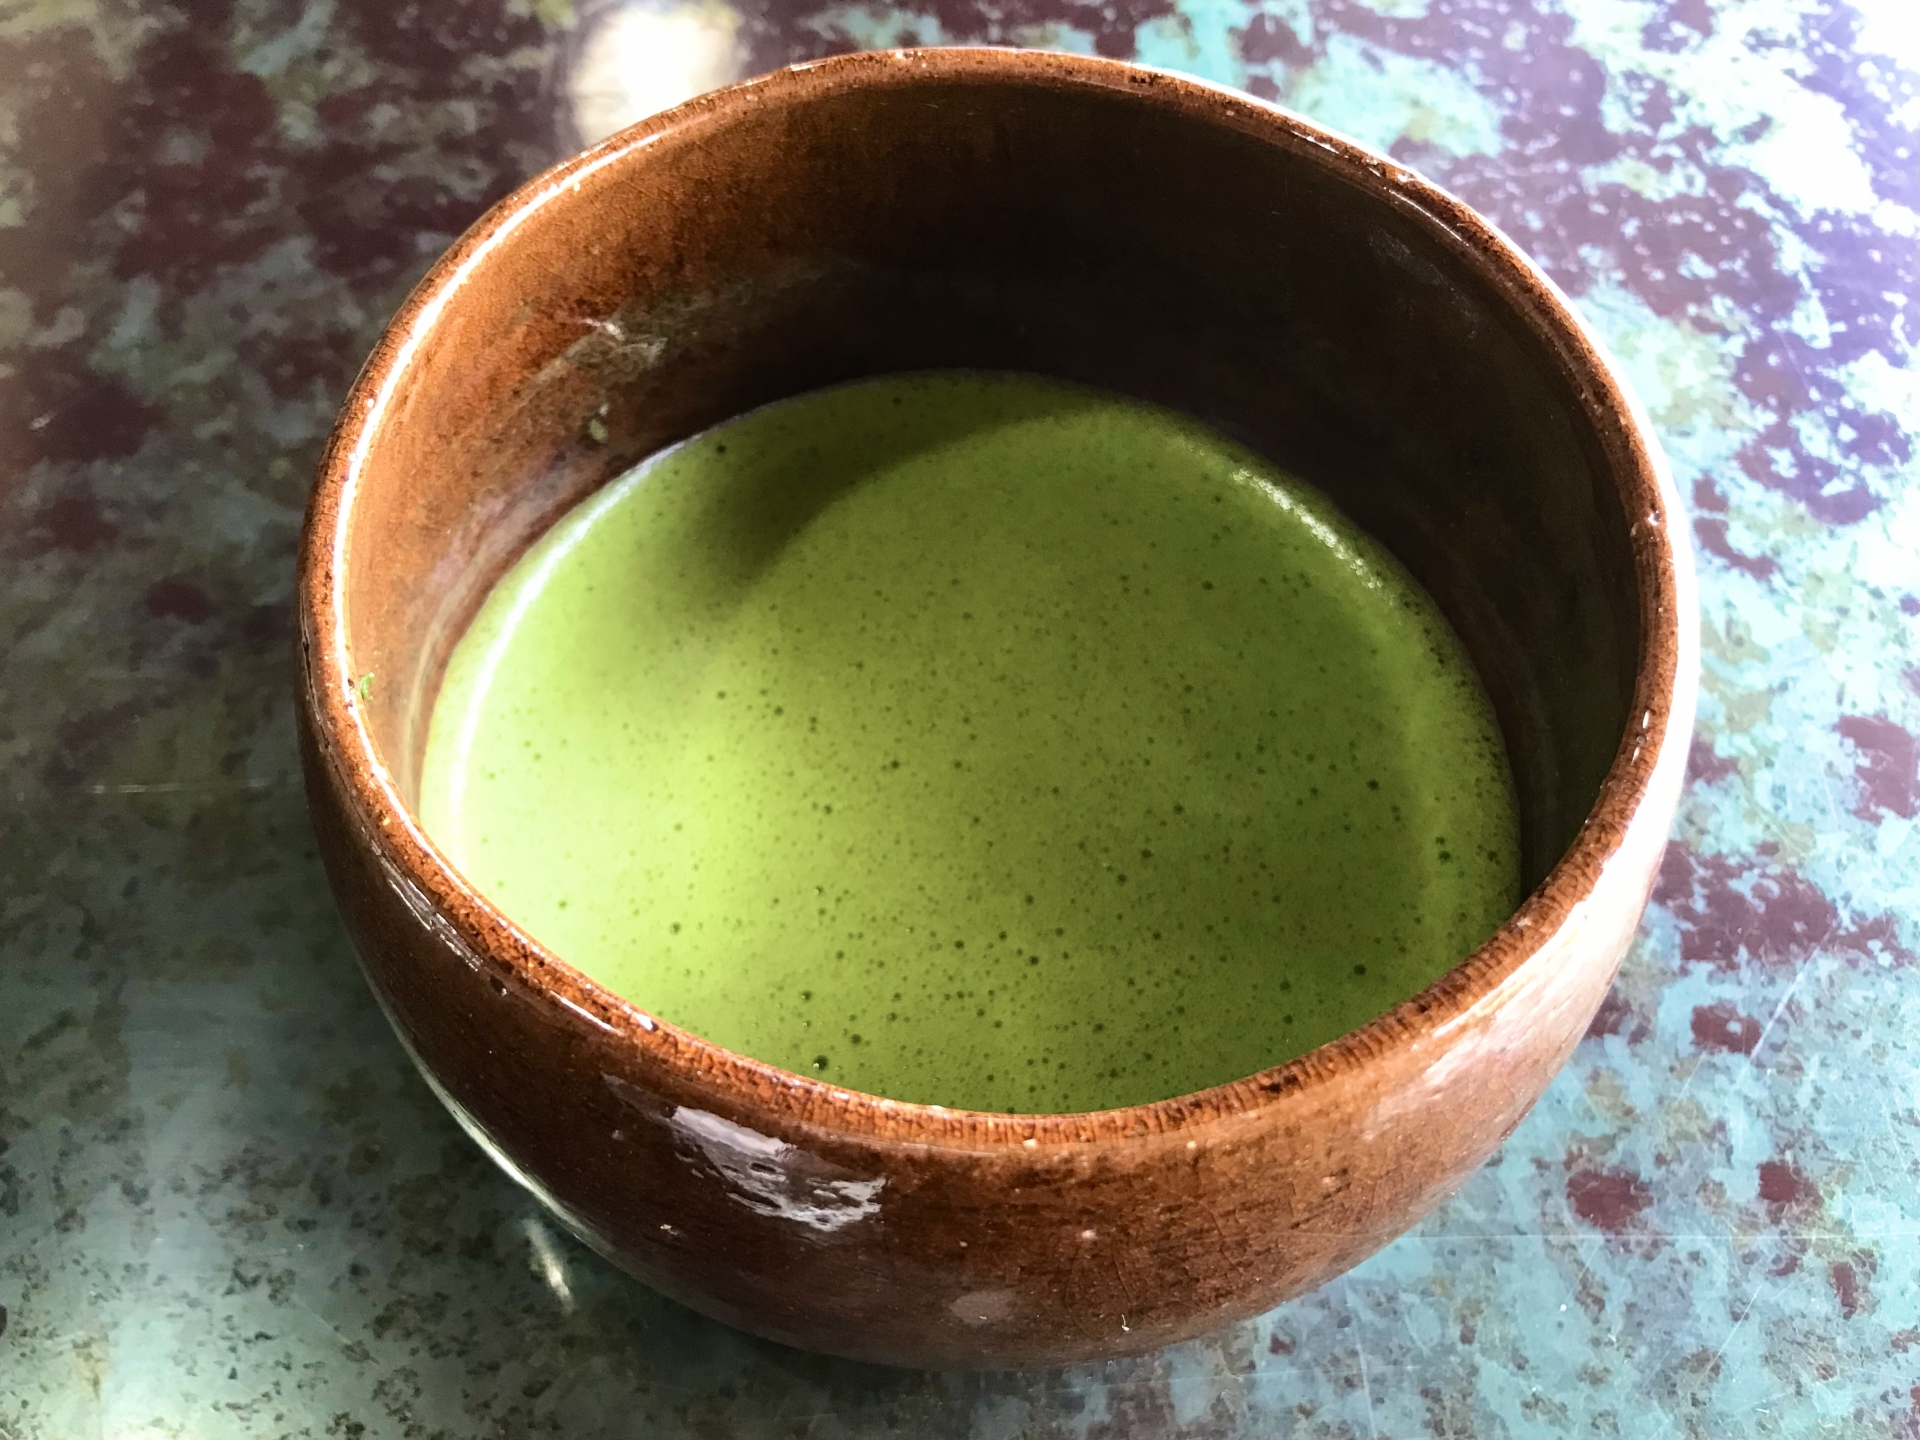 抹茶の写真です。茶色いとうきに緑色の抹茶が入っています。茶の表面はうっすらと泡で覆われています